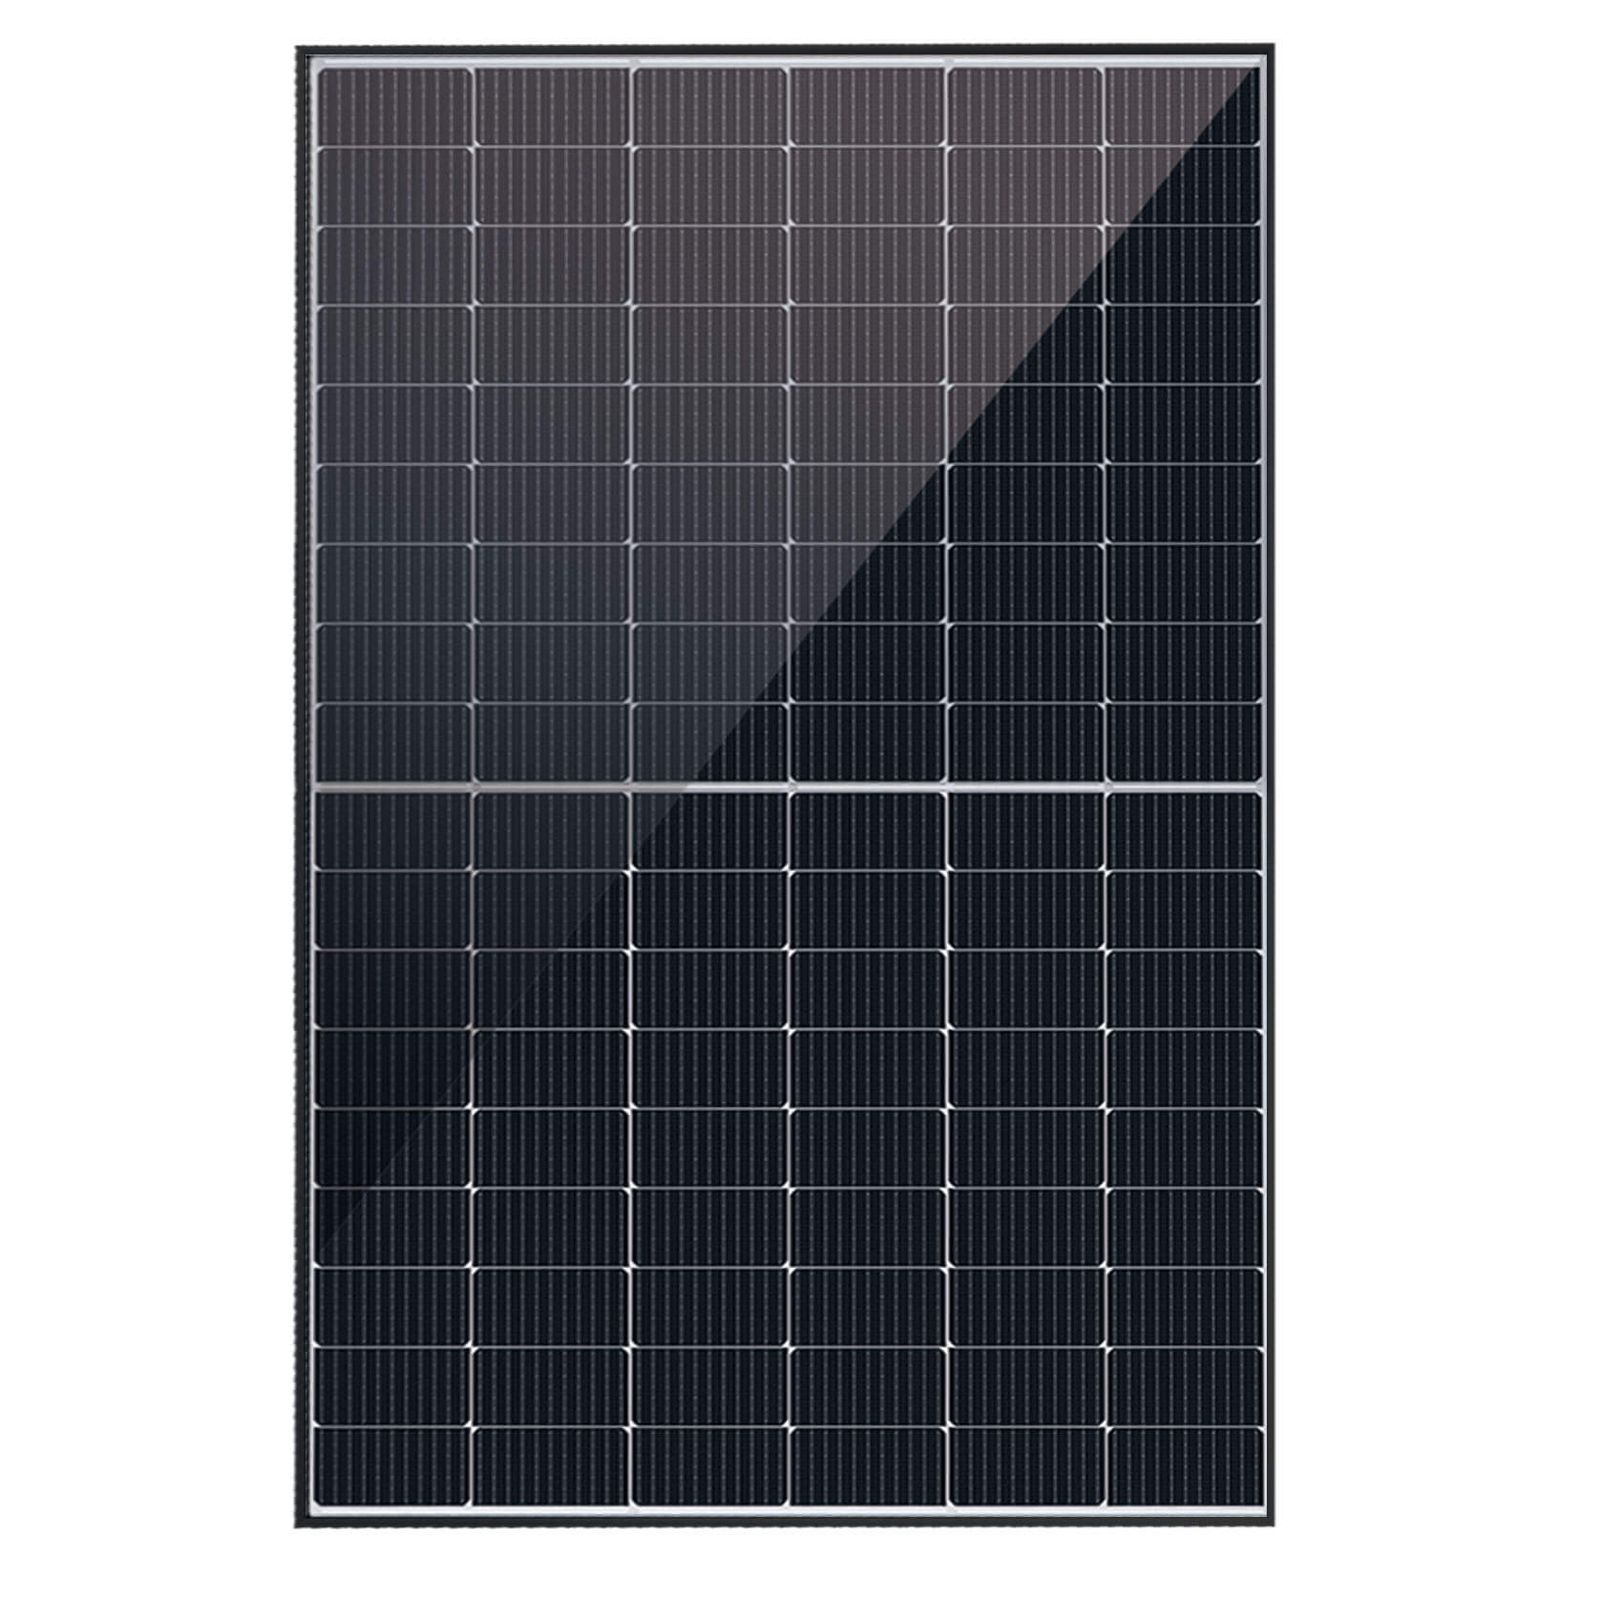 Astronergy N5s Photovoltaik-Solarmodul 435Wp CHSM54N-HC BF blackframe